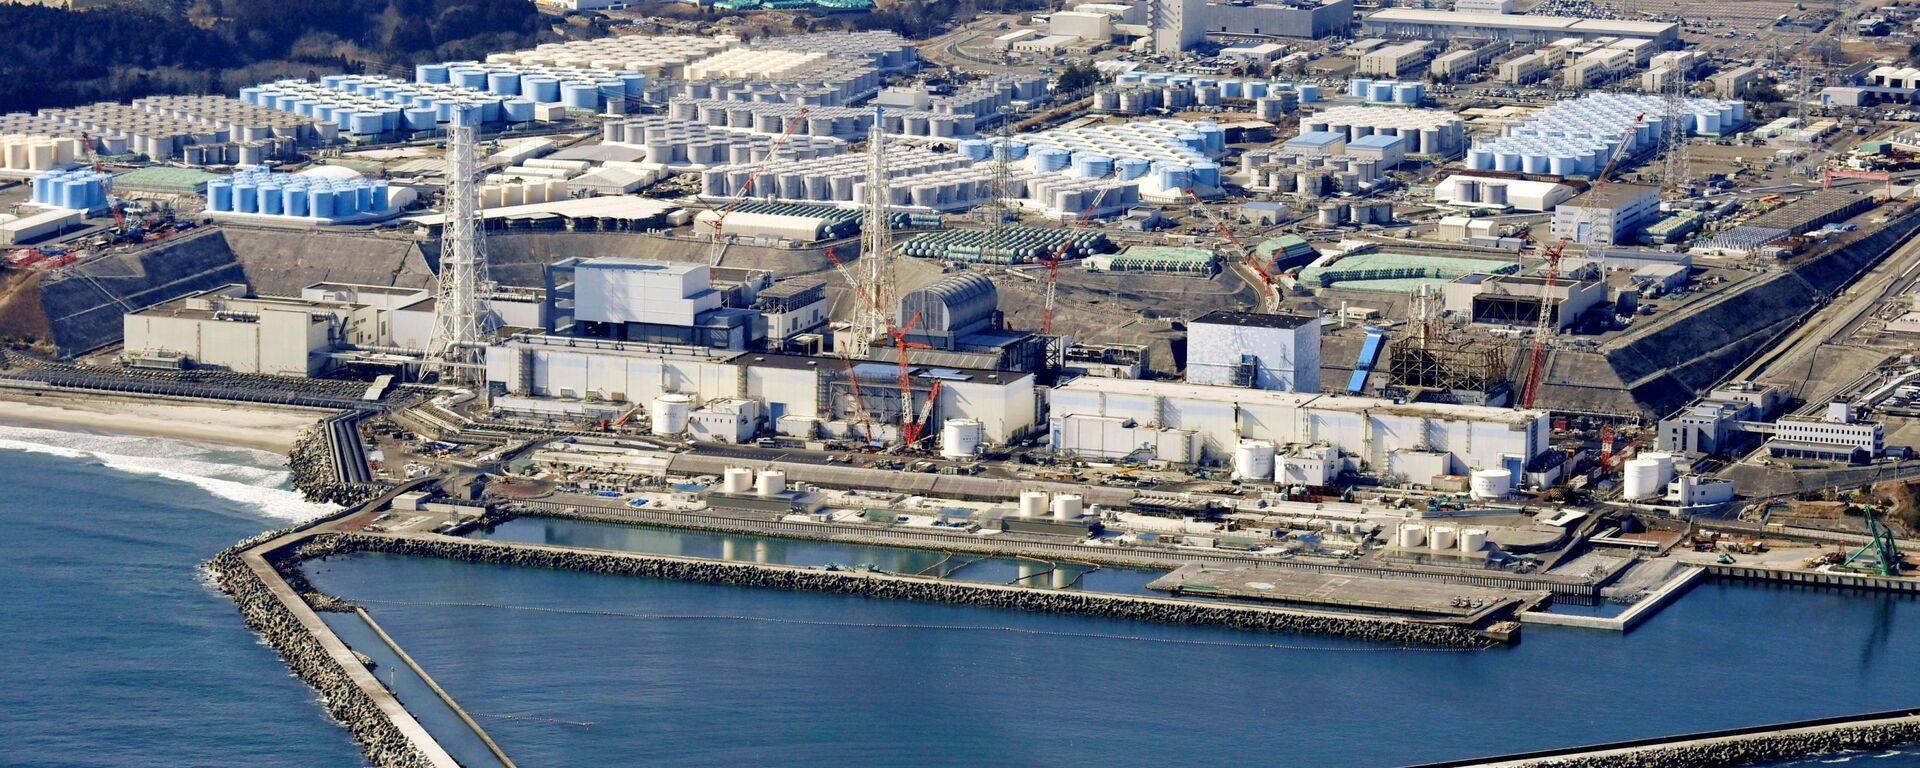 福岛第一核电站3号机组高放射量装备移除作业开始